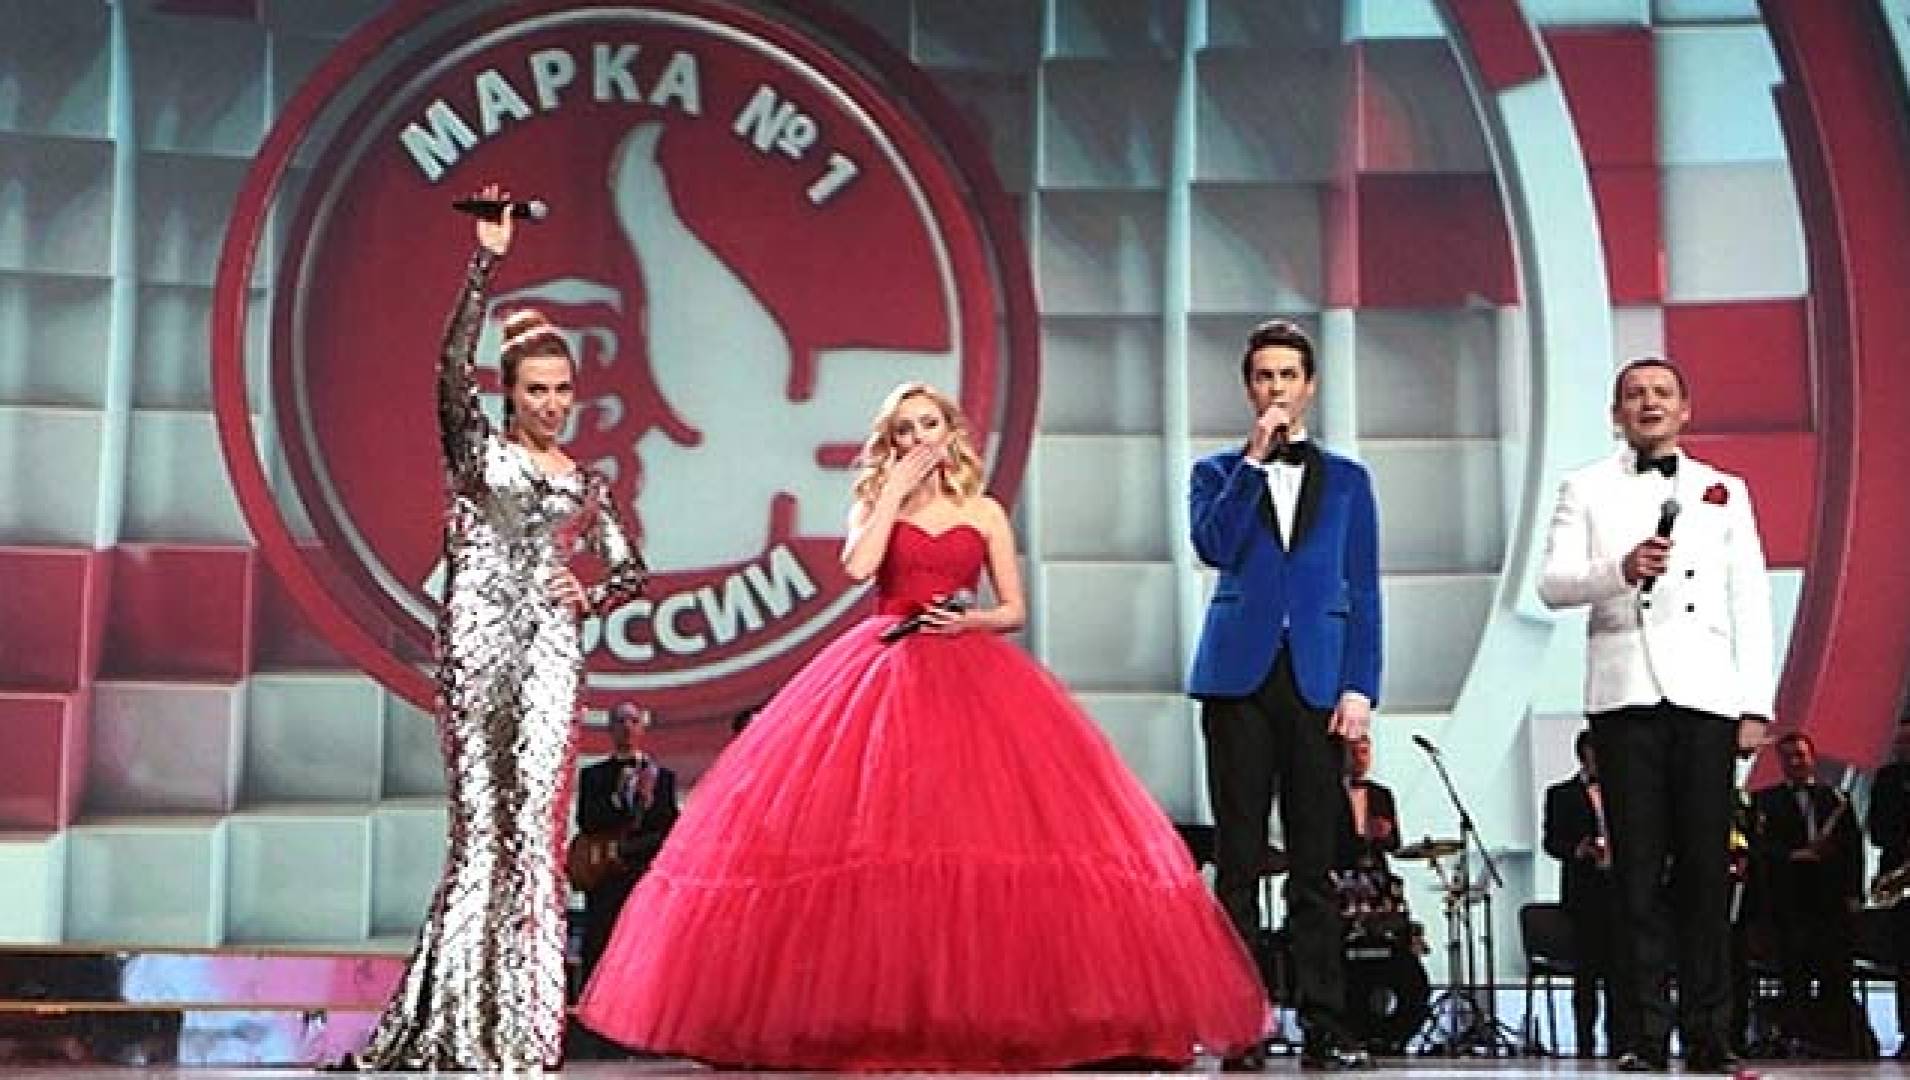 Концерт на канале россия 1 сегодня. Марка 1 в Кремле концерт. Марка 1 концерт в Кремле 2021. Народная марка 2008 в Кремле.